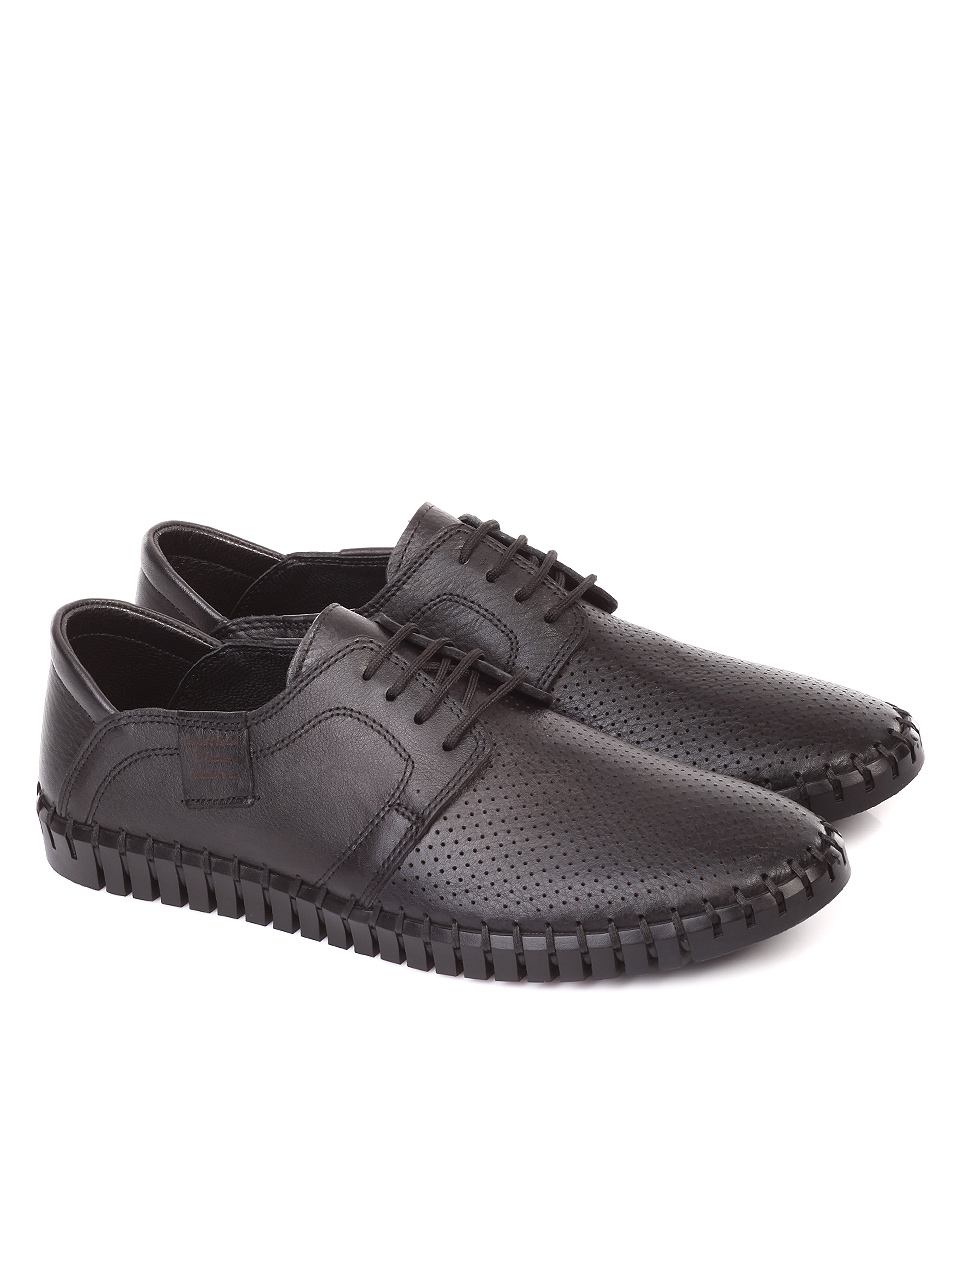 Ежедневни мъжки обувки от естествена кожа 7AT-19437 black